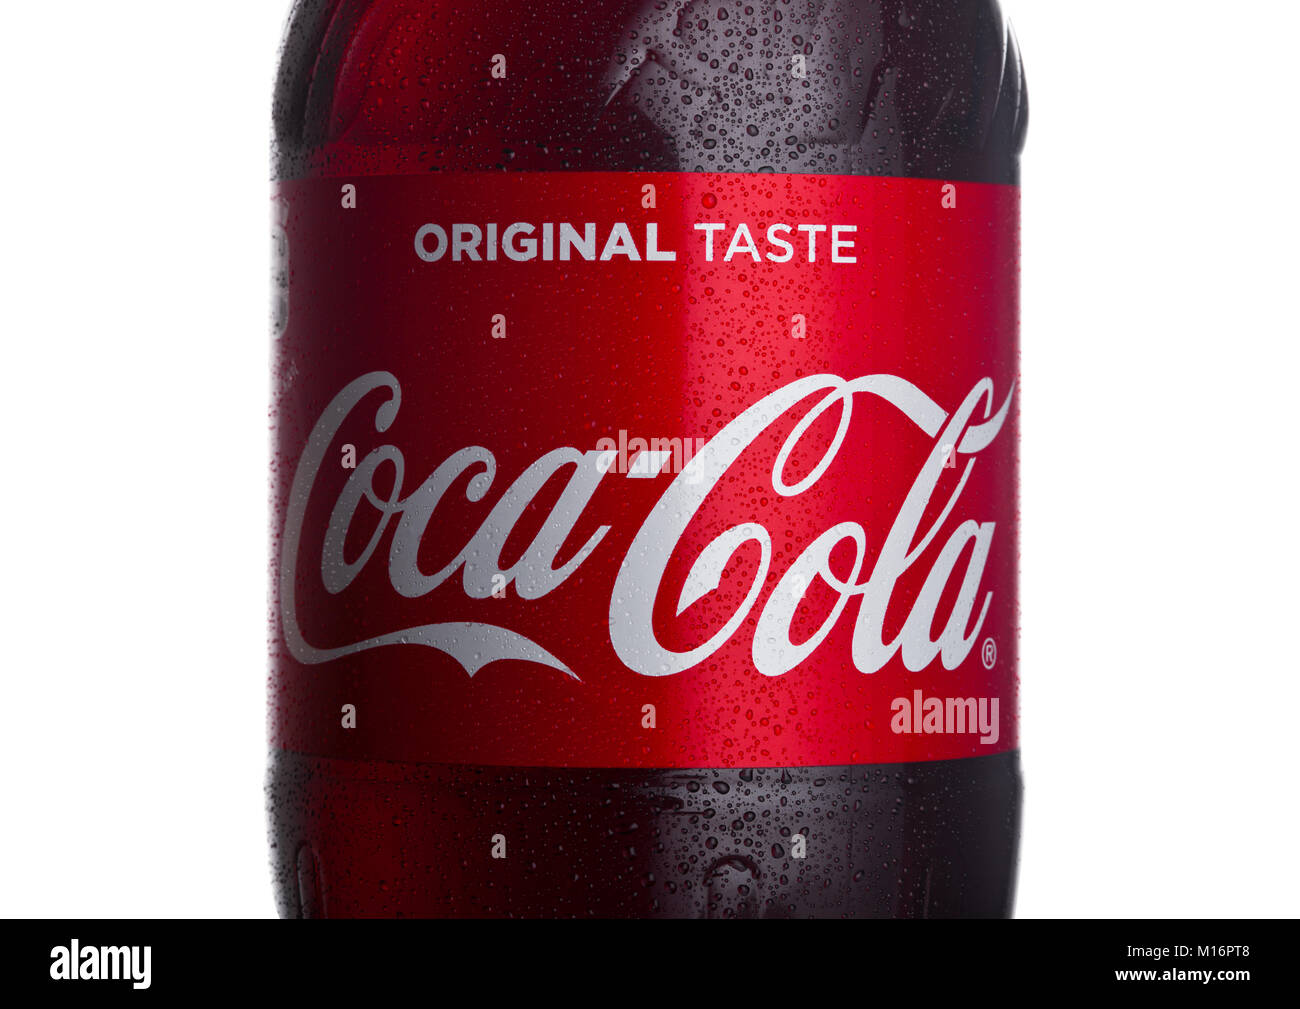 Londres, Reino Unido - 24 de enero de 2018: la etiqueta de botella de Coca- Cola clásica sobre fondo blanco. Coca-Cola es uno de los más populares  productos de soda en el mundo